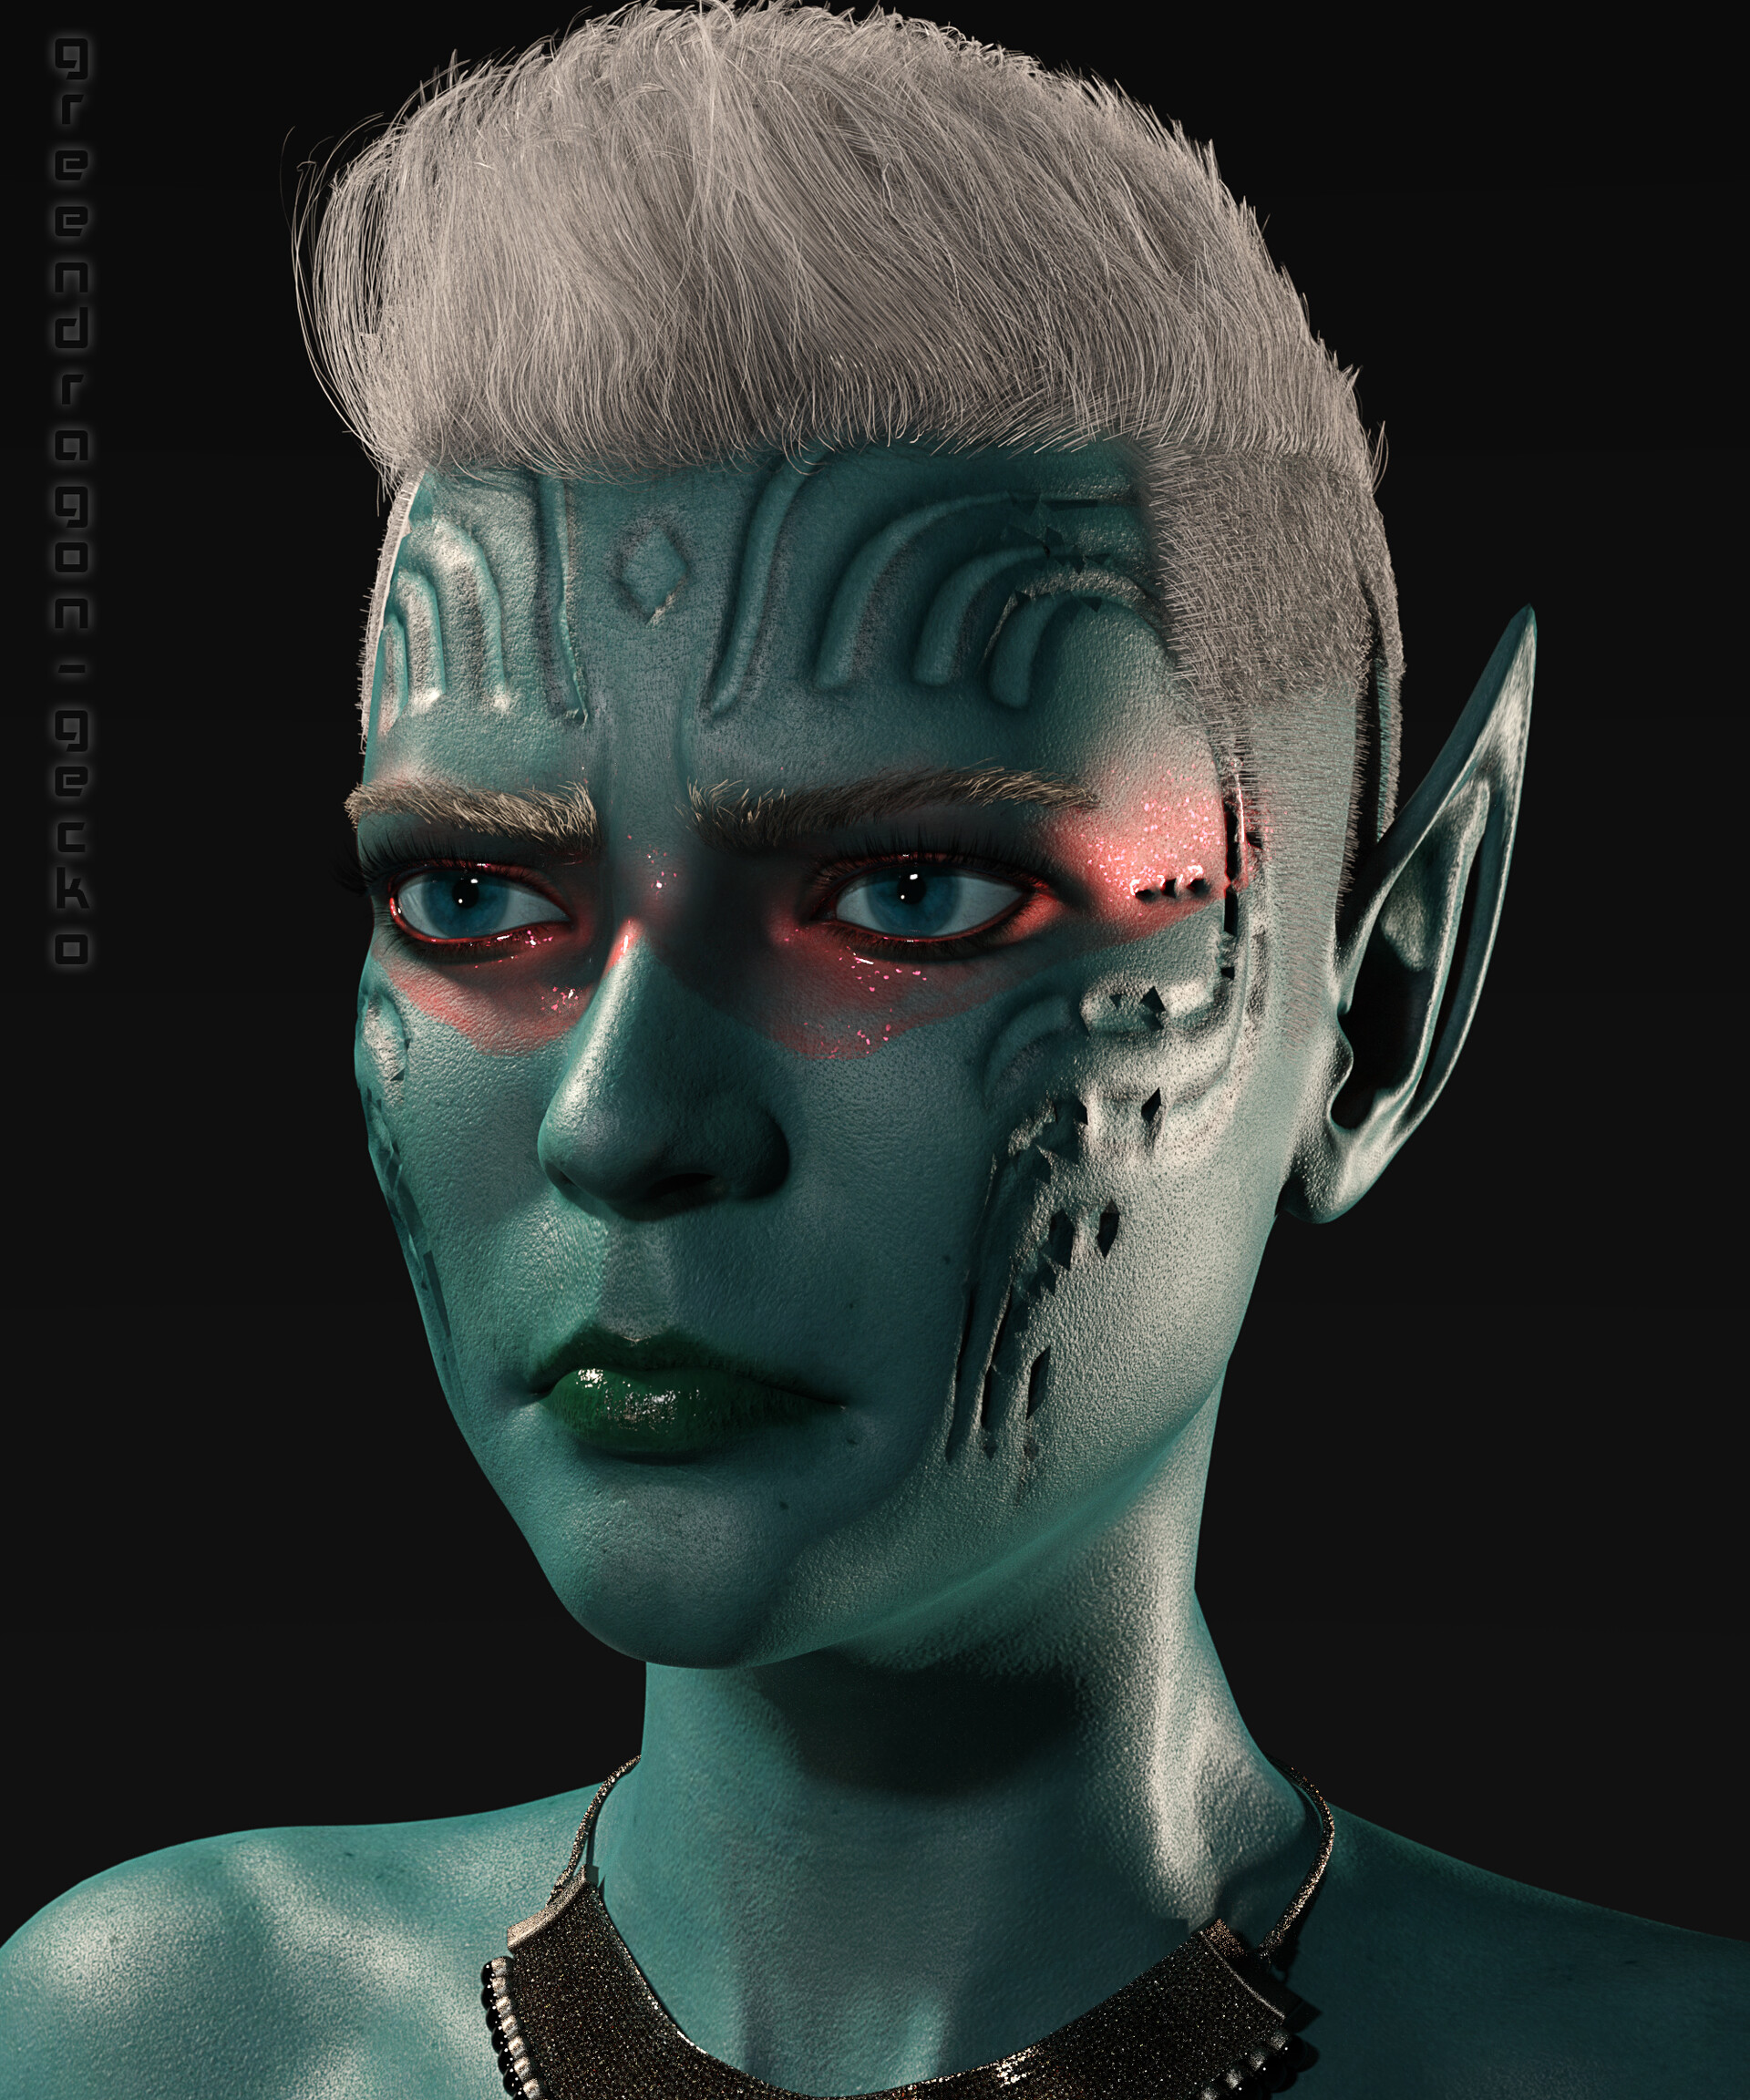 S greendragon - Warrior makeup portraits